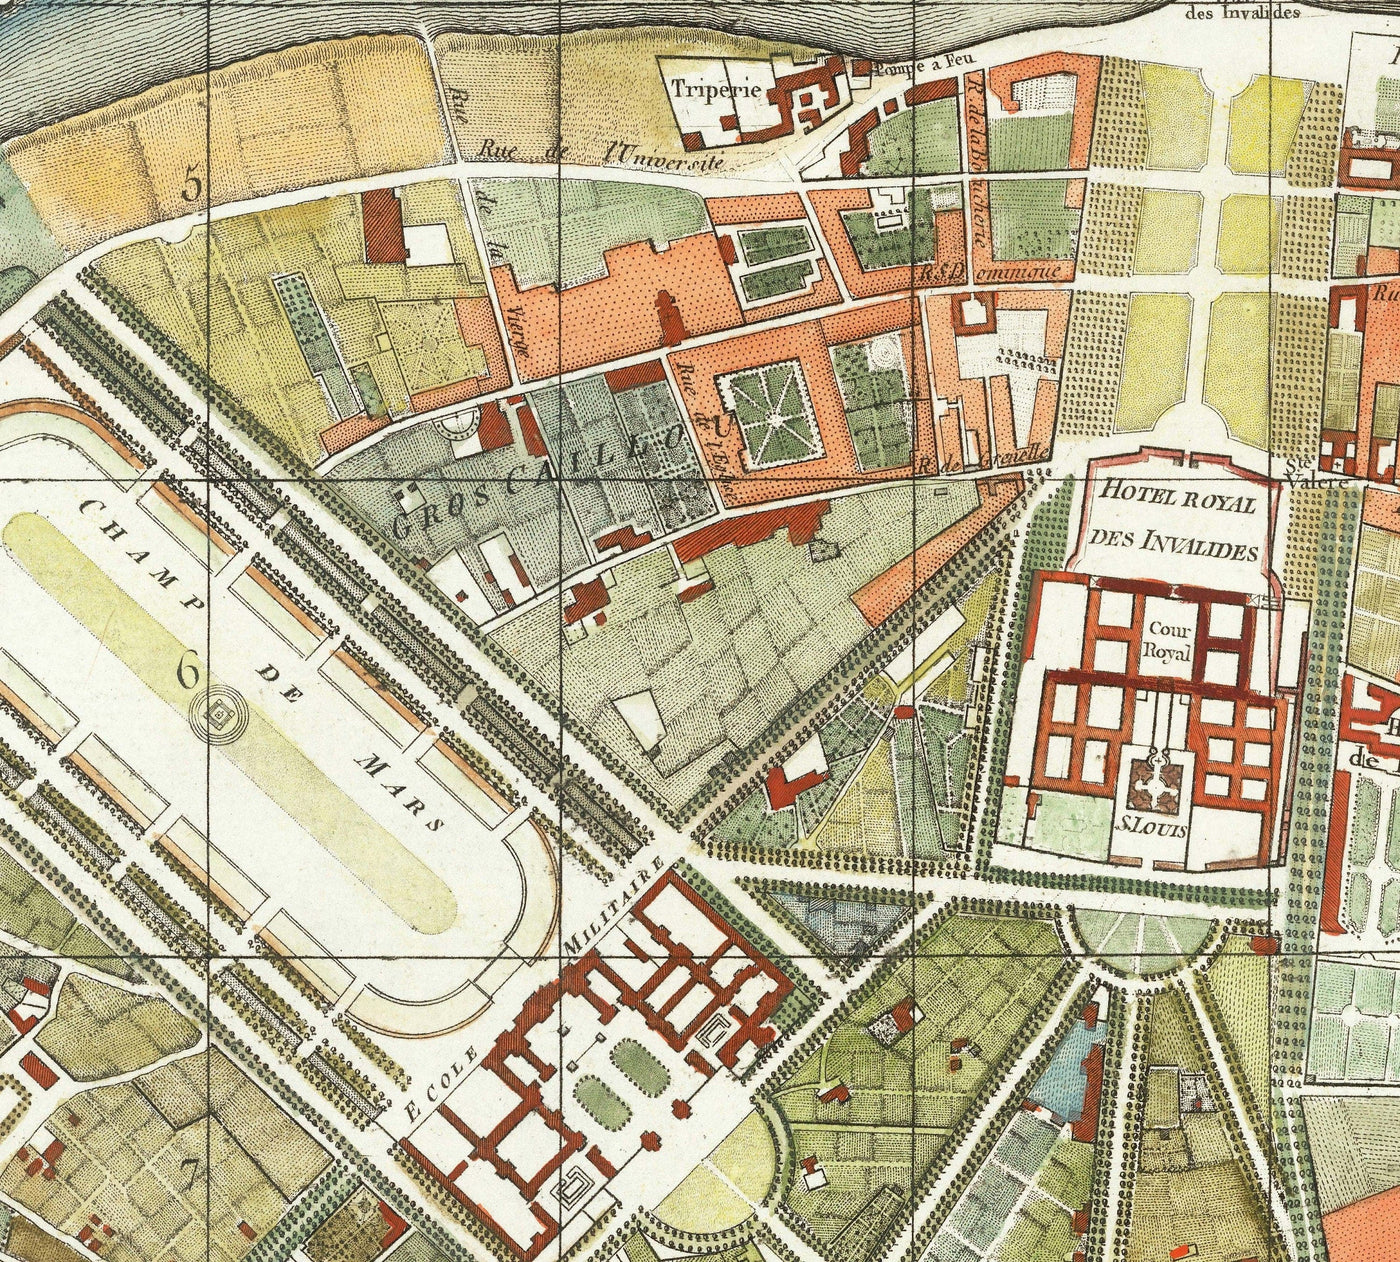 Alte Karte von Paris, Frankreich von Delamarche 1797 - Louvre, Notre Dame, Sainte-Chapelle, Seine, Revolution, Invalides